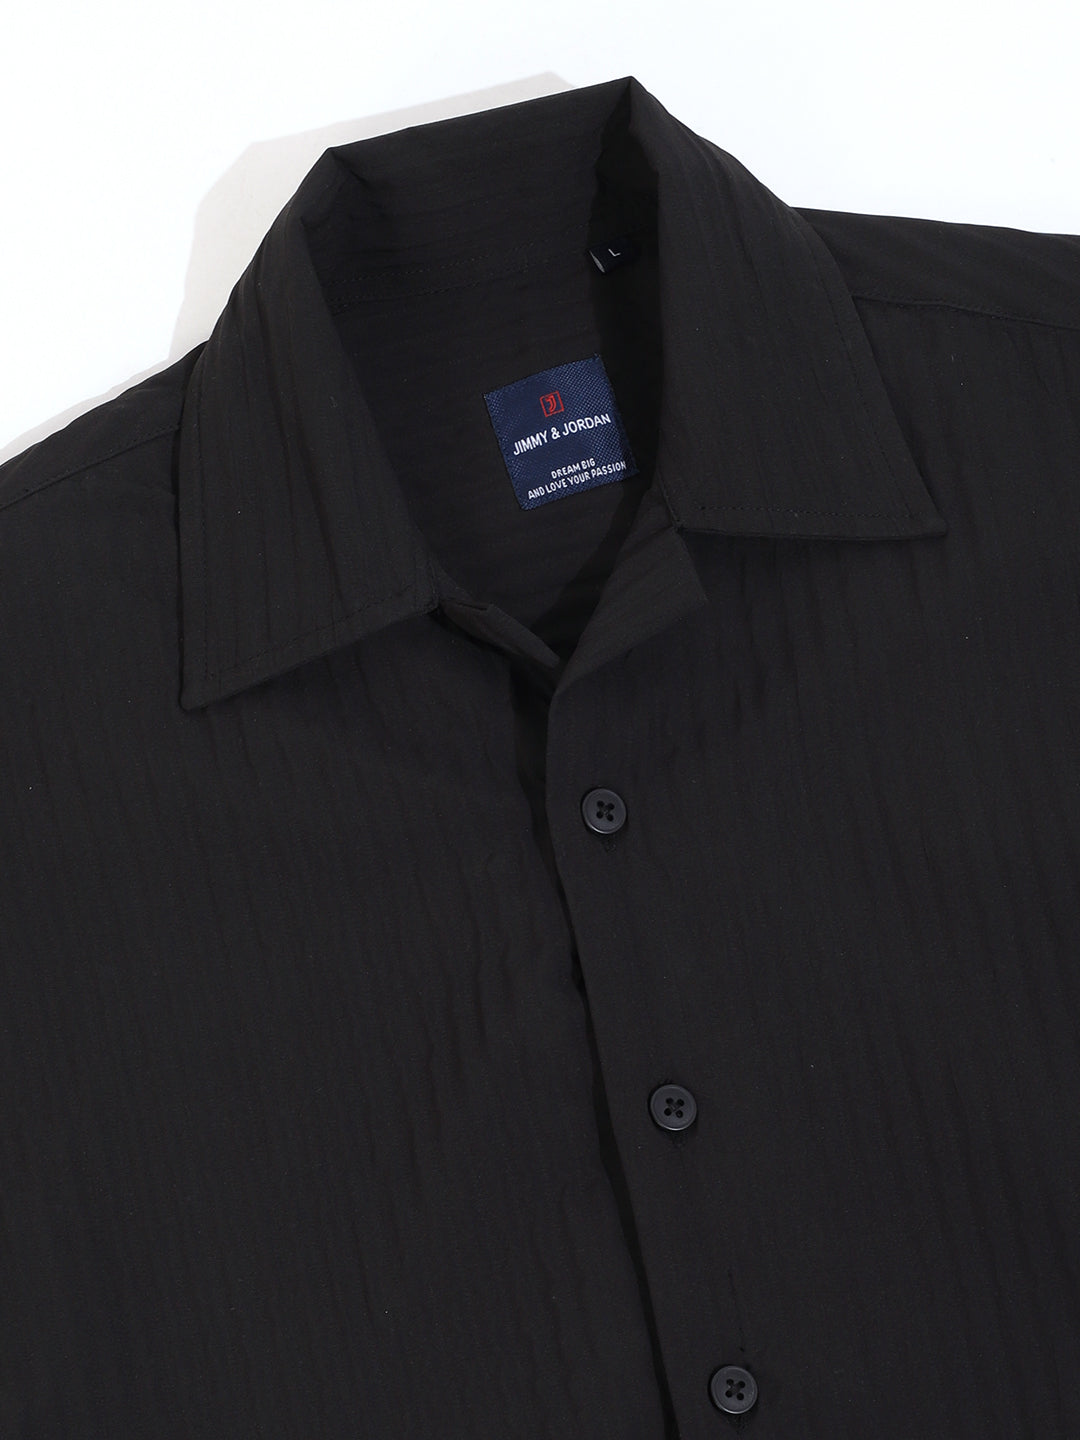 Serene Knit Elegance Black Half Sleeve Shirt